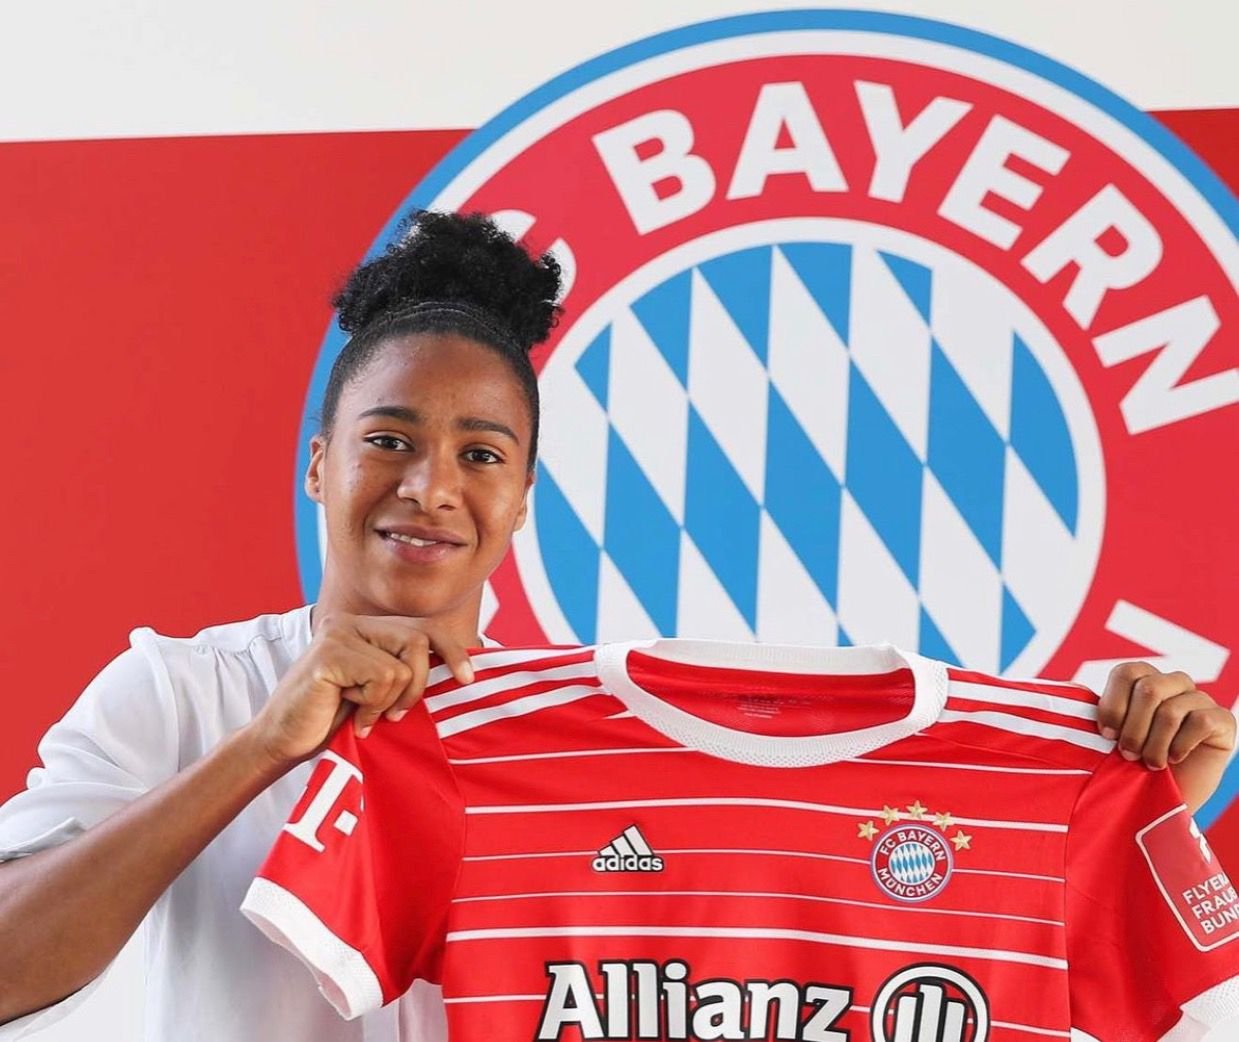 Zagueira nascida no DF se torna a primeira brasileira a vestir a camisa do Bayern de Munique